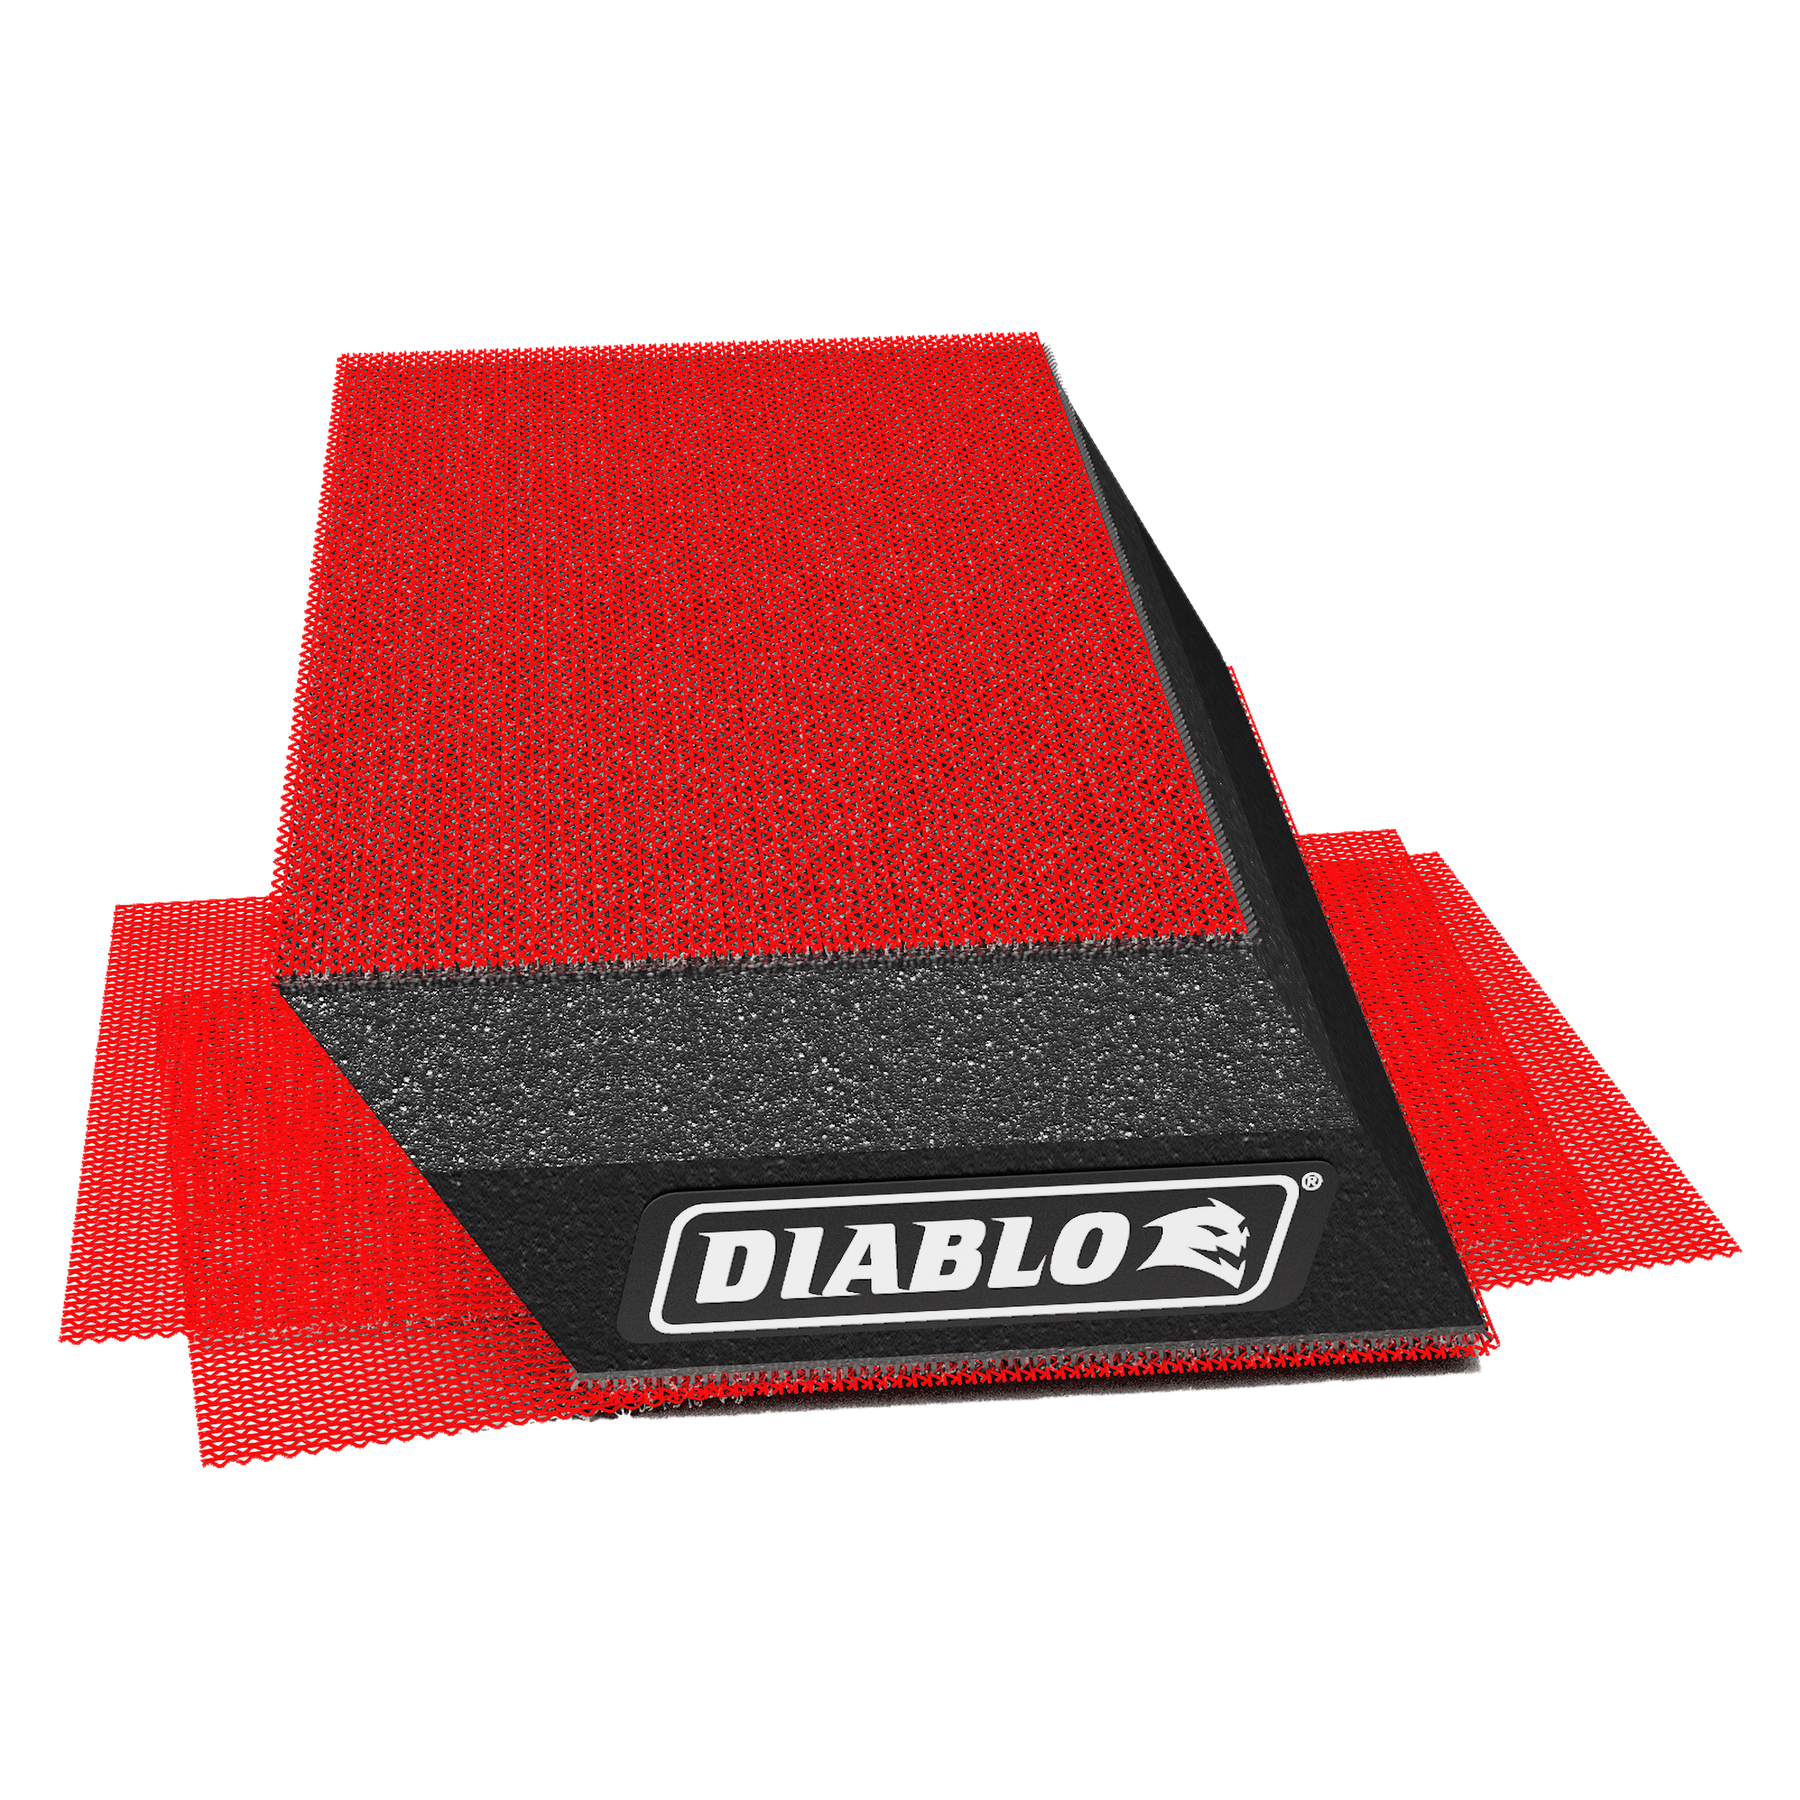 Diablo 5 in. x 2-3/4 in. Reusable Angled Hand Sanding Block